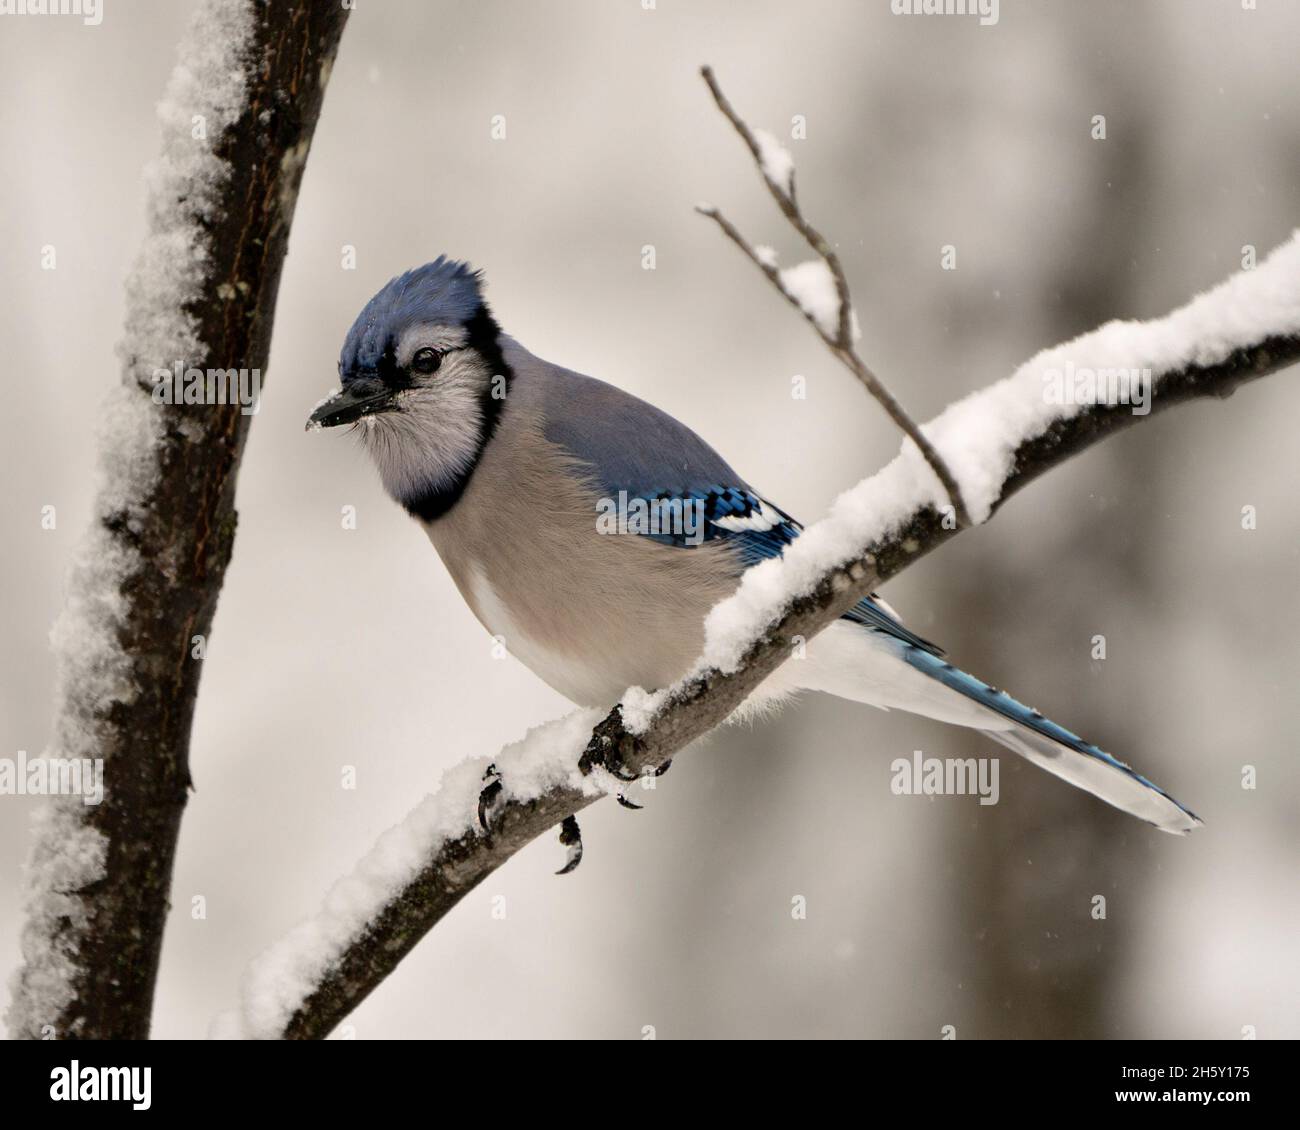 Azul Jay pájaro posado en una rama en la temporada de invierno con nieve caída y un fondo borroso en su entorno mostrando plumas azules y blancas. Foto de stock